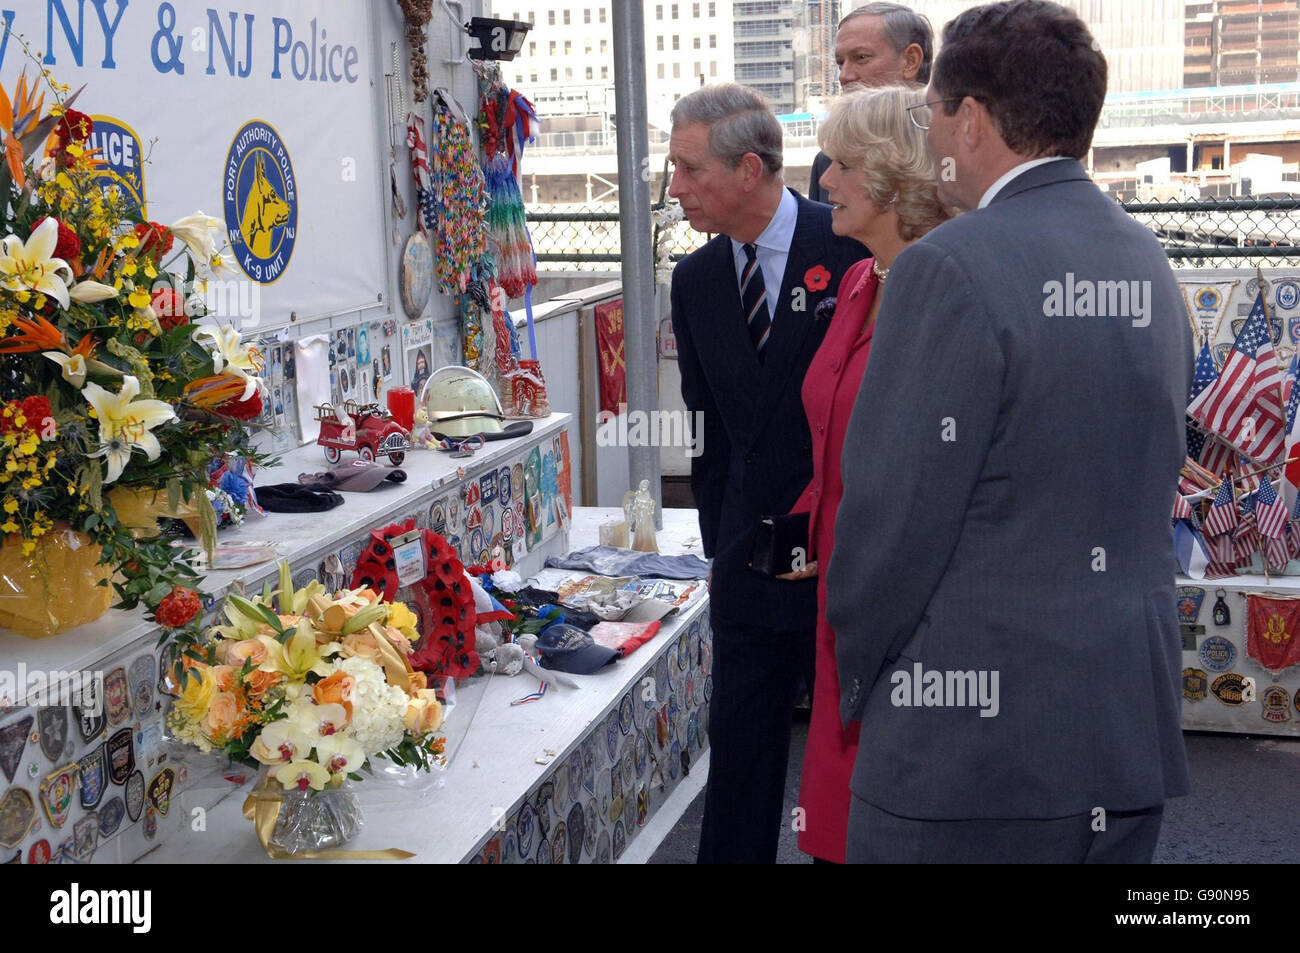 La duchesse de Cornouailles et le Prince de Galles lors d'une visite à Ground Zero, le site du World Trade Centre à New York, le mardi 1er novembre 2005. Charles et Camilla ont touché le dos aux États-Unis à l'heure du déjeuner et ont été chutés directement à Ground Zero pour rendre hommage aux victimes du 11 septembre 2001. Ni l'un ni l'autre n'avait visité la ville depuis la tragédie. Voir PA Story ROYAL Charles. APPUYEZ SUR ASSOCIATION photo. Le crédit photo devrait se lire comme suit : Arthur Edwards/PA/Pool/The Sun Banque D'Images